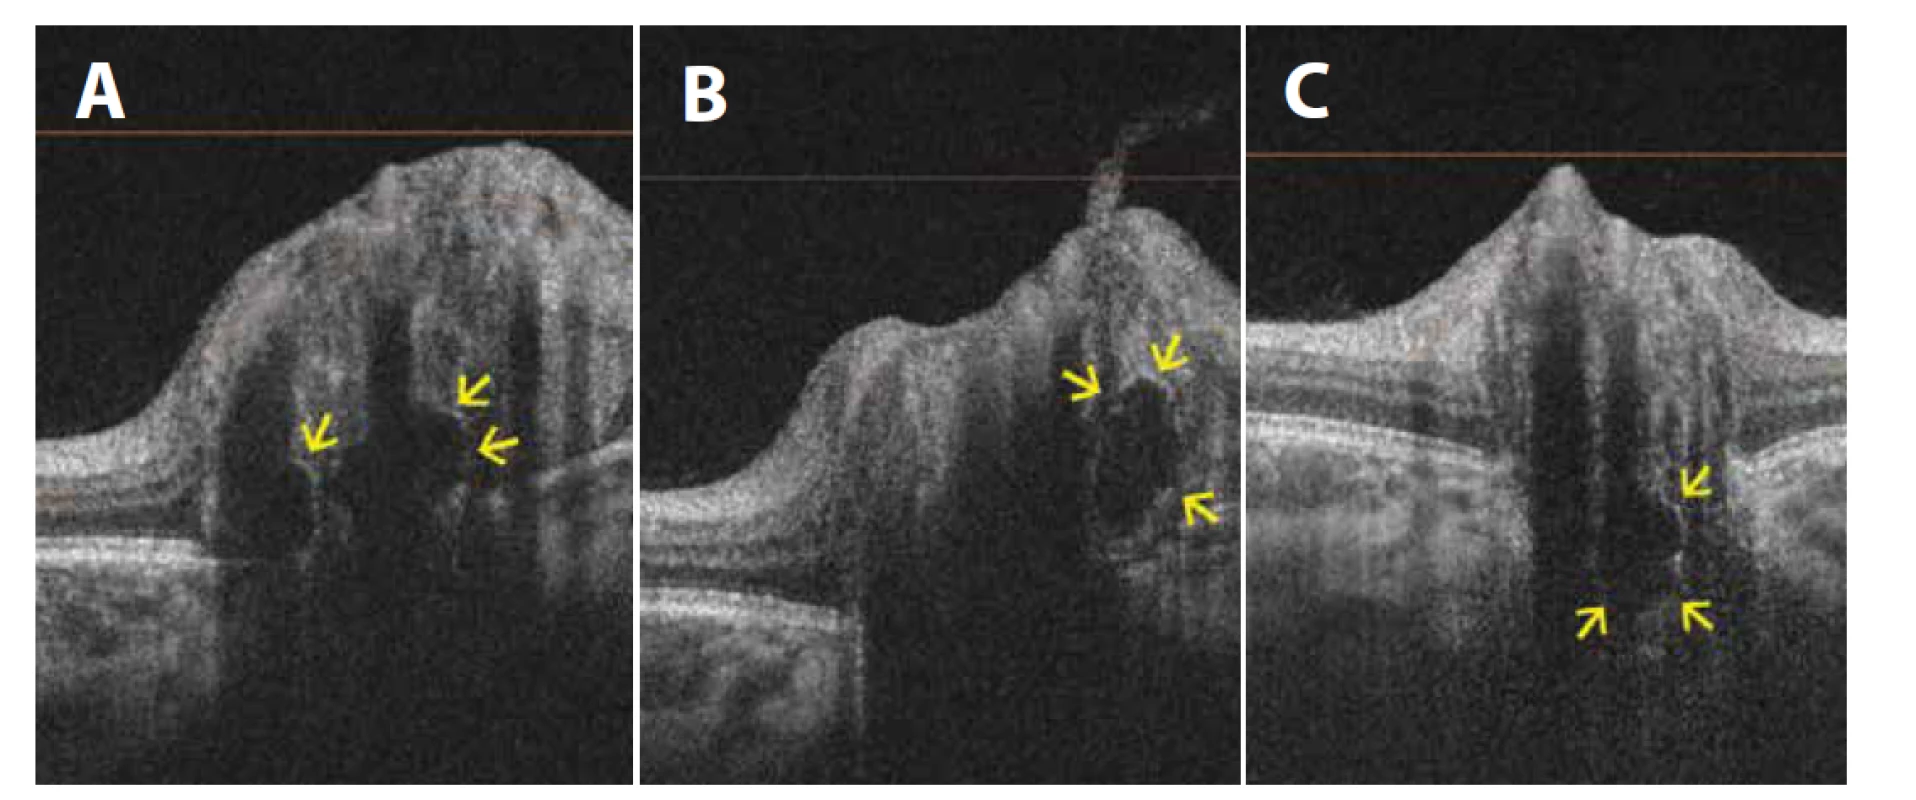 Lineární horizontální transpapilární swept source OCT skeny zobrazují v různých řezech drúzy terče zrakového nervu jako hyporeflektivní
ložiska s hyperreflektivním lemem<br>
(A) Dvě hluboké drúzy a elevace terče zrakového nervu u 11leté pacientky. (B) Další drúza na stejném oku, ale na jiném řezu. (C) Hluboká
drúza u 5letého pacienta